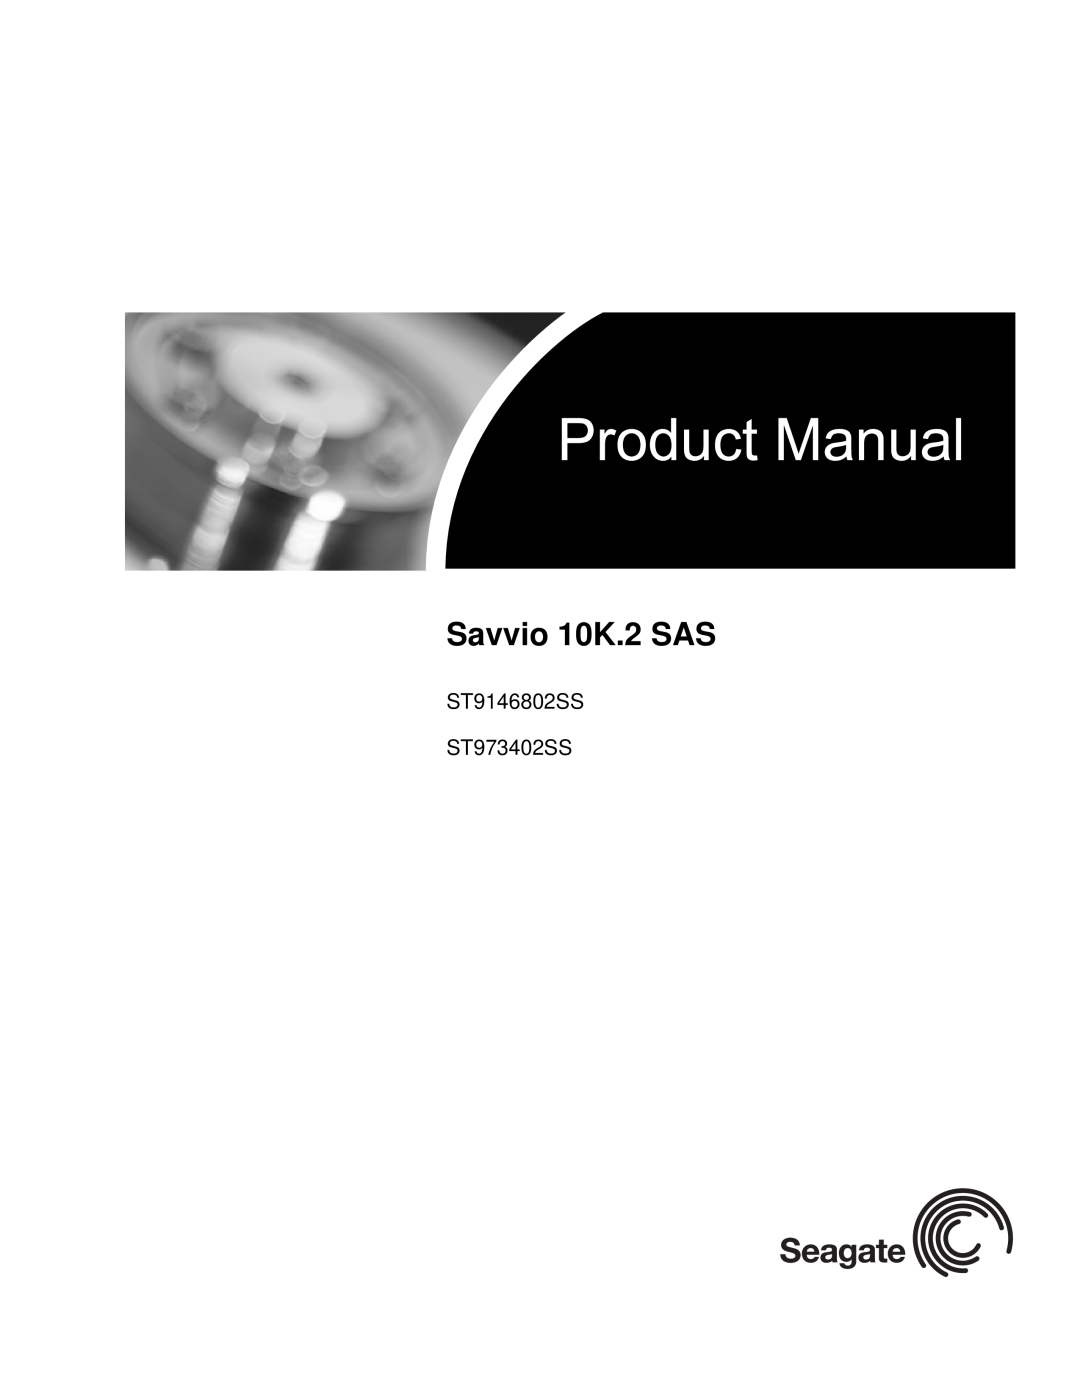 Seagate manual Savvio 10K.2 SAS, ST9146802SS ST973402SS 